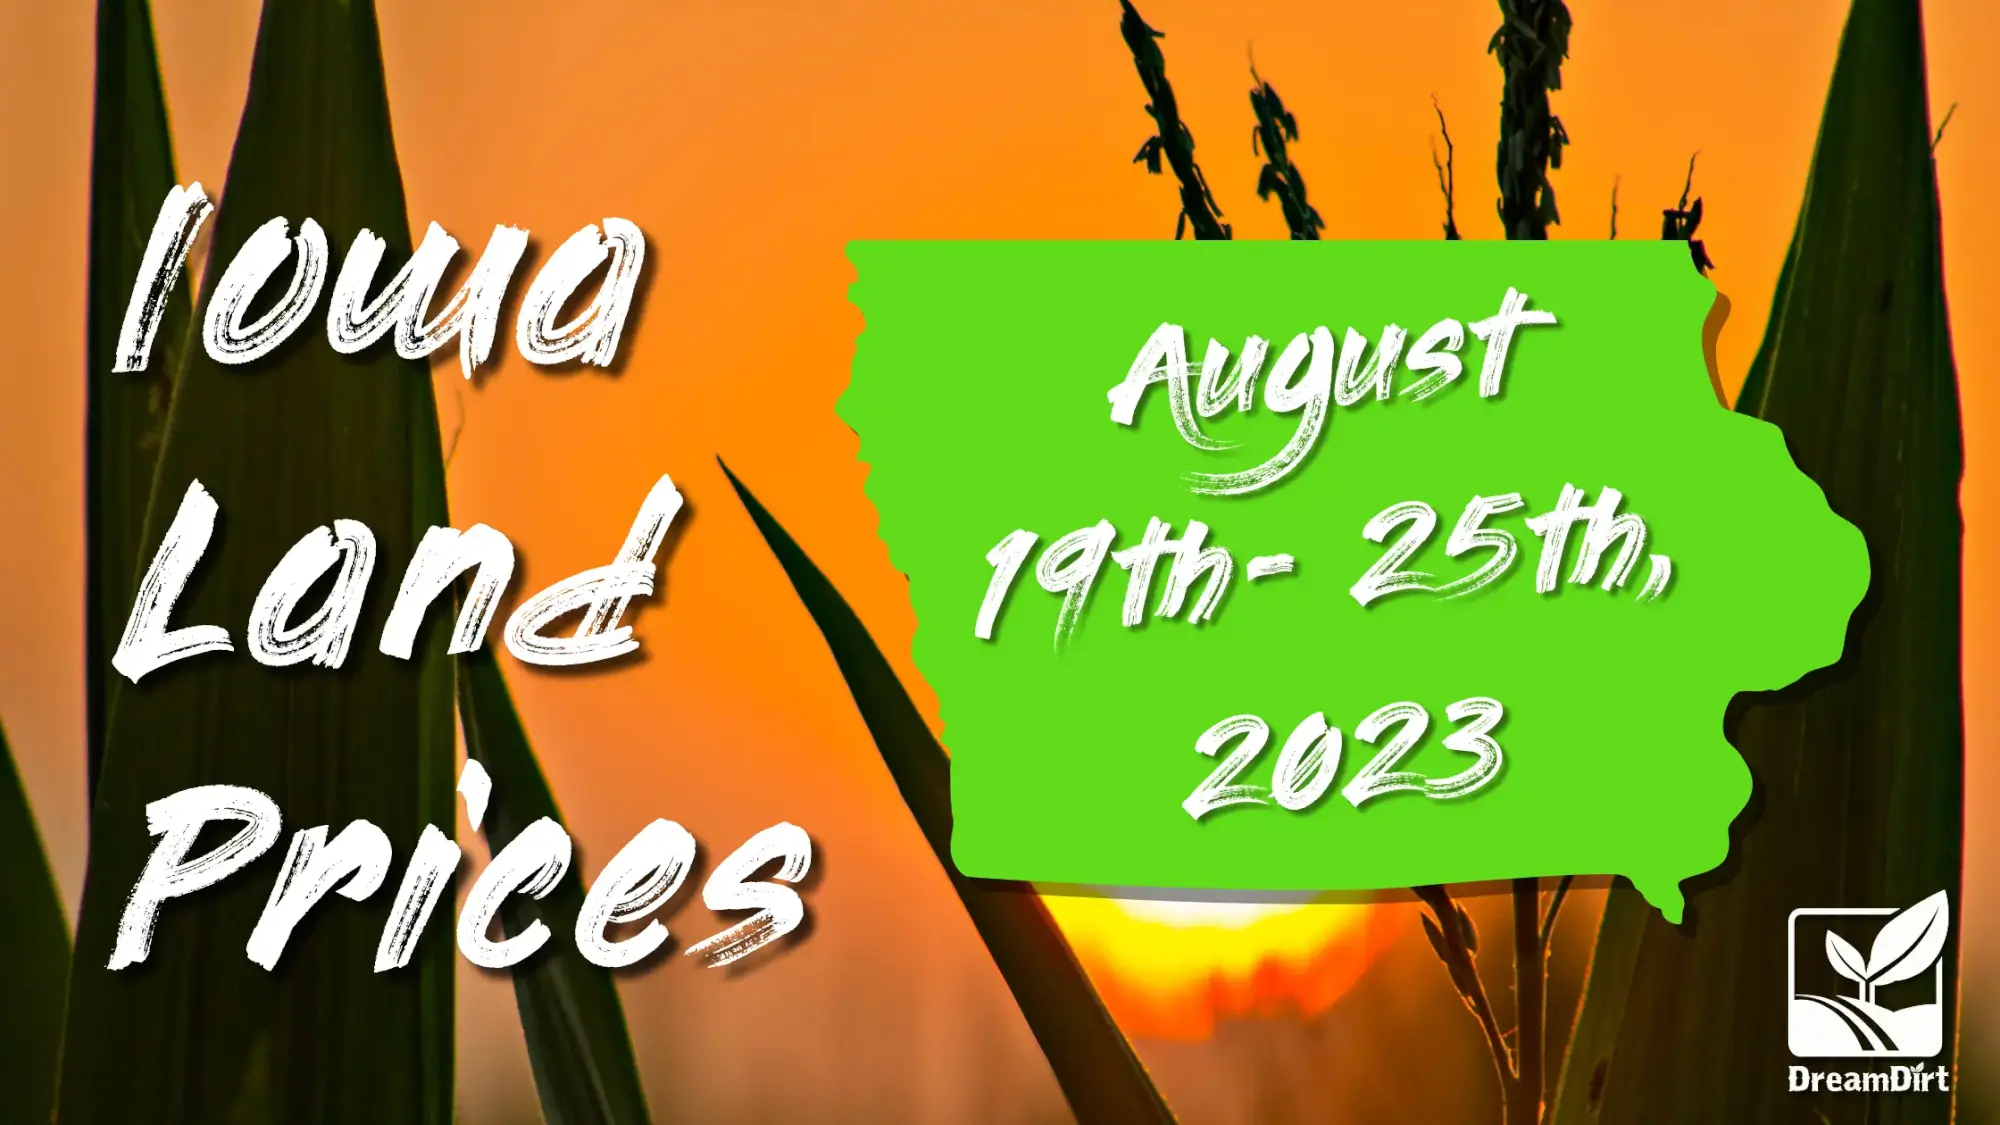 Iowa land prices Aug 19th - 25th, 2023